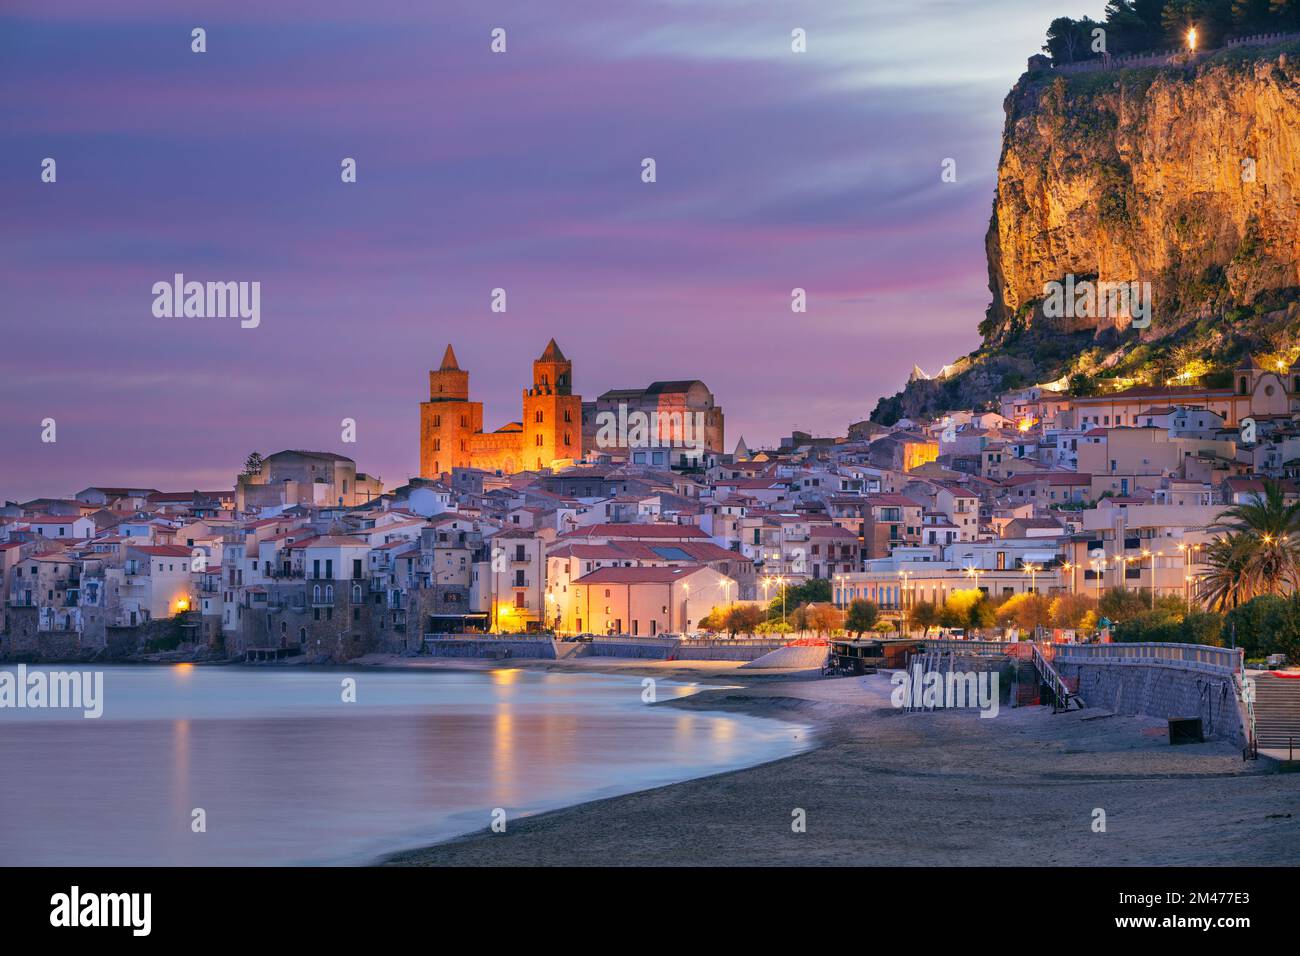 Cefalù, Sicilia, Italia. Immagine del paesaggio urbano se la città costiera Cefalu in Sicilia all'alba drammatica. Foto Stock